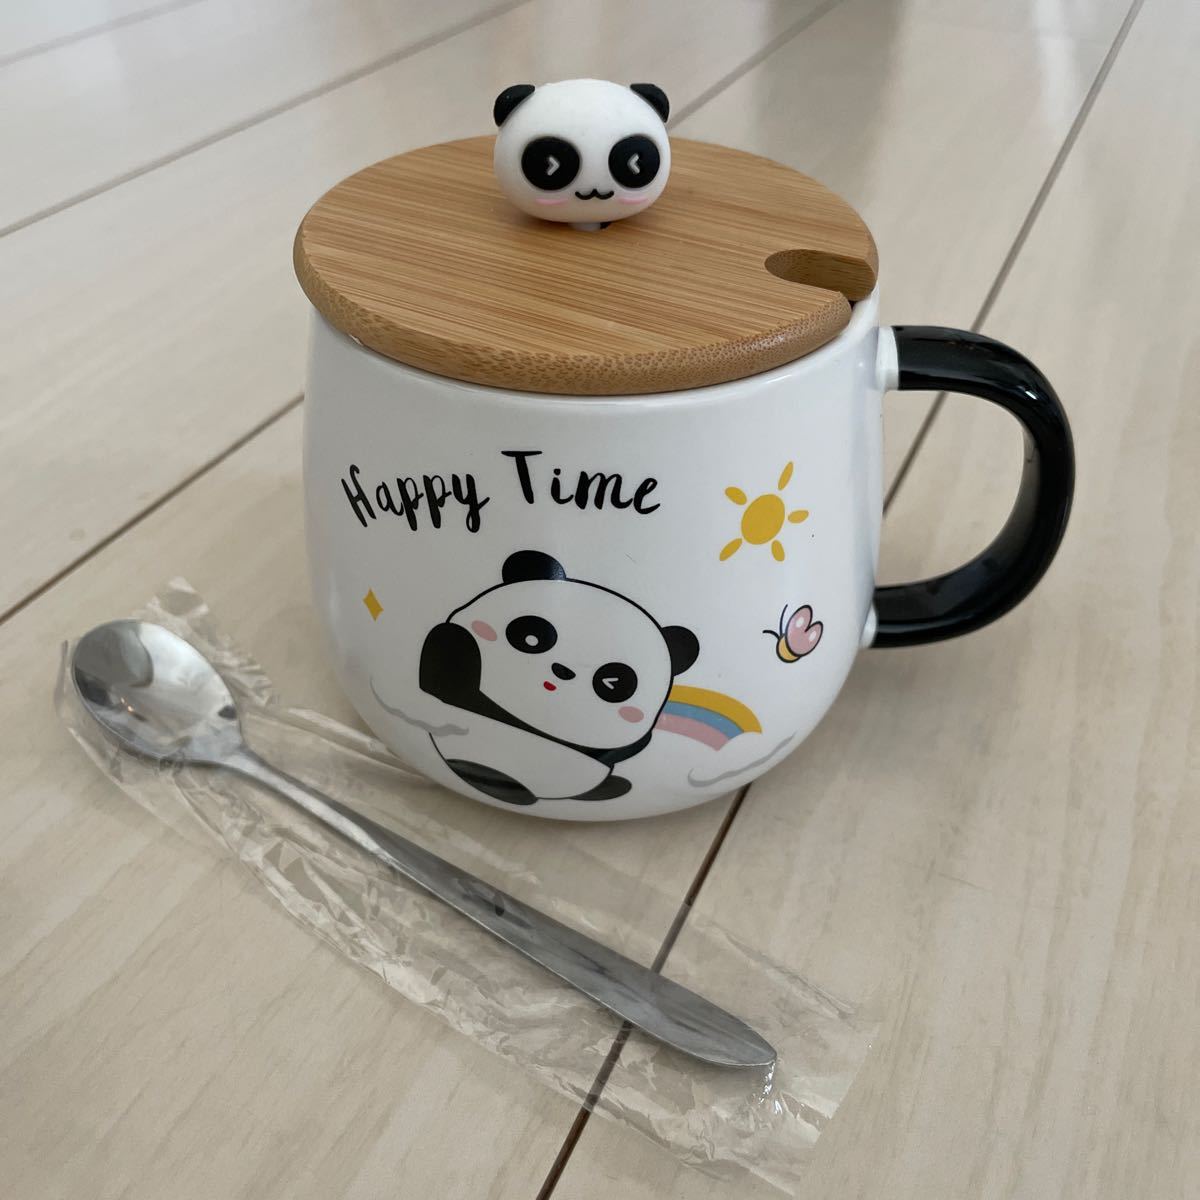 Neue unbenutzte Tasse Panda Keramiktasse mit Deckel Löffel Milchtasse Märchen Kaffeetasse Handbemalt Tier Frühstück Große Kapazität Tee, Teeutensilien, Becher, Aus Keramik